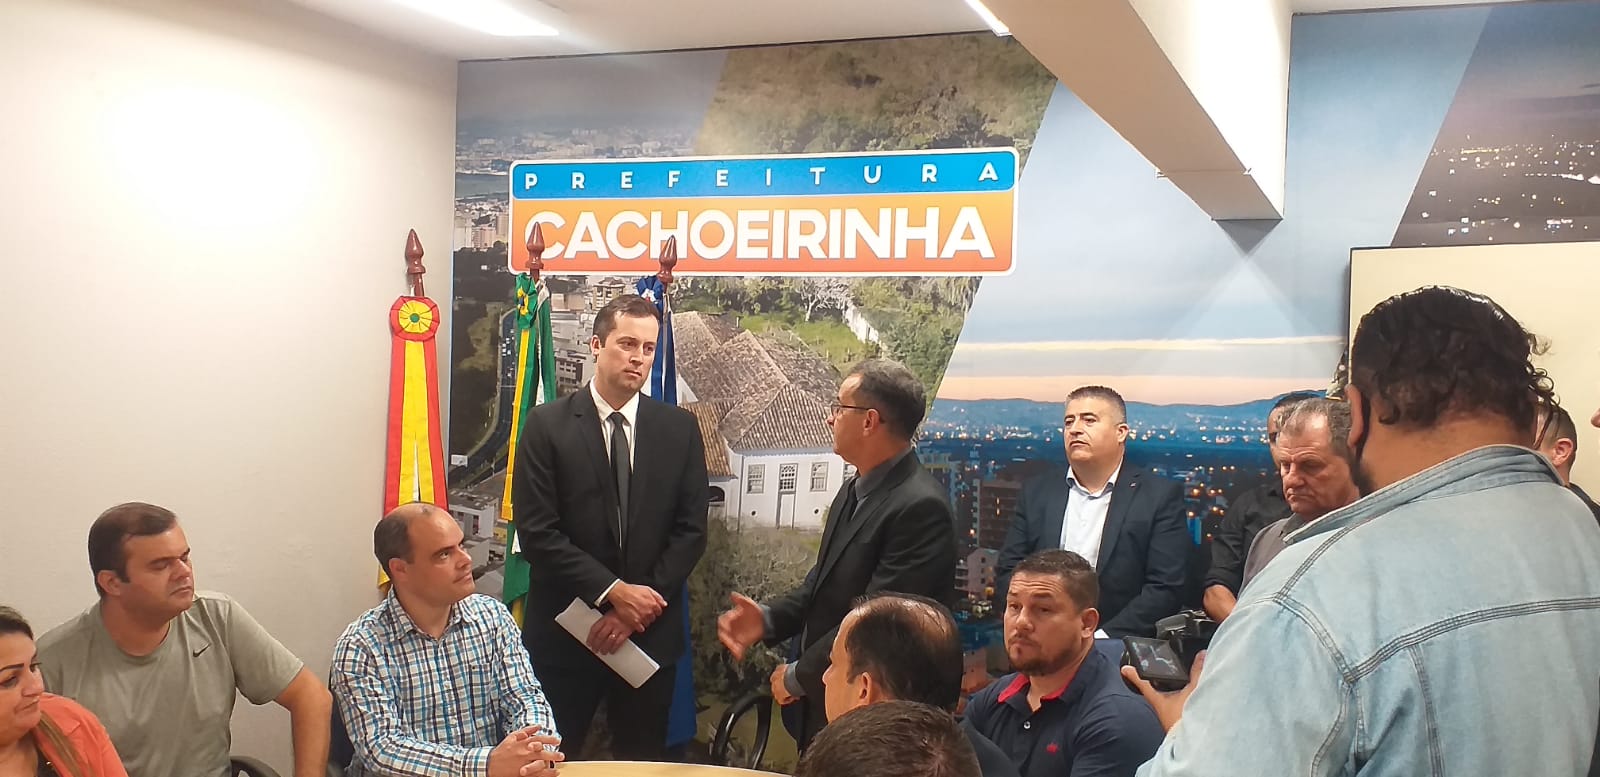 Cristian Wasem toma posse como prefeito de Cachoeirinha